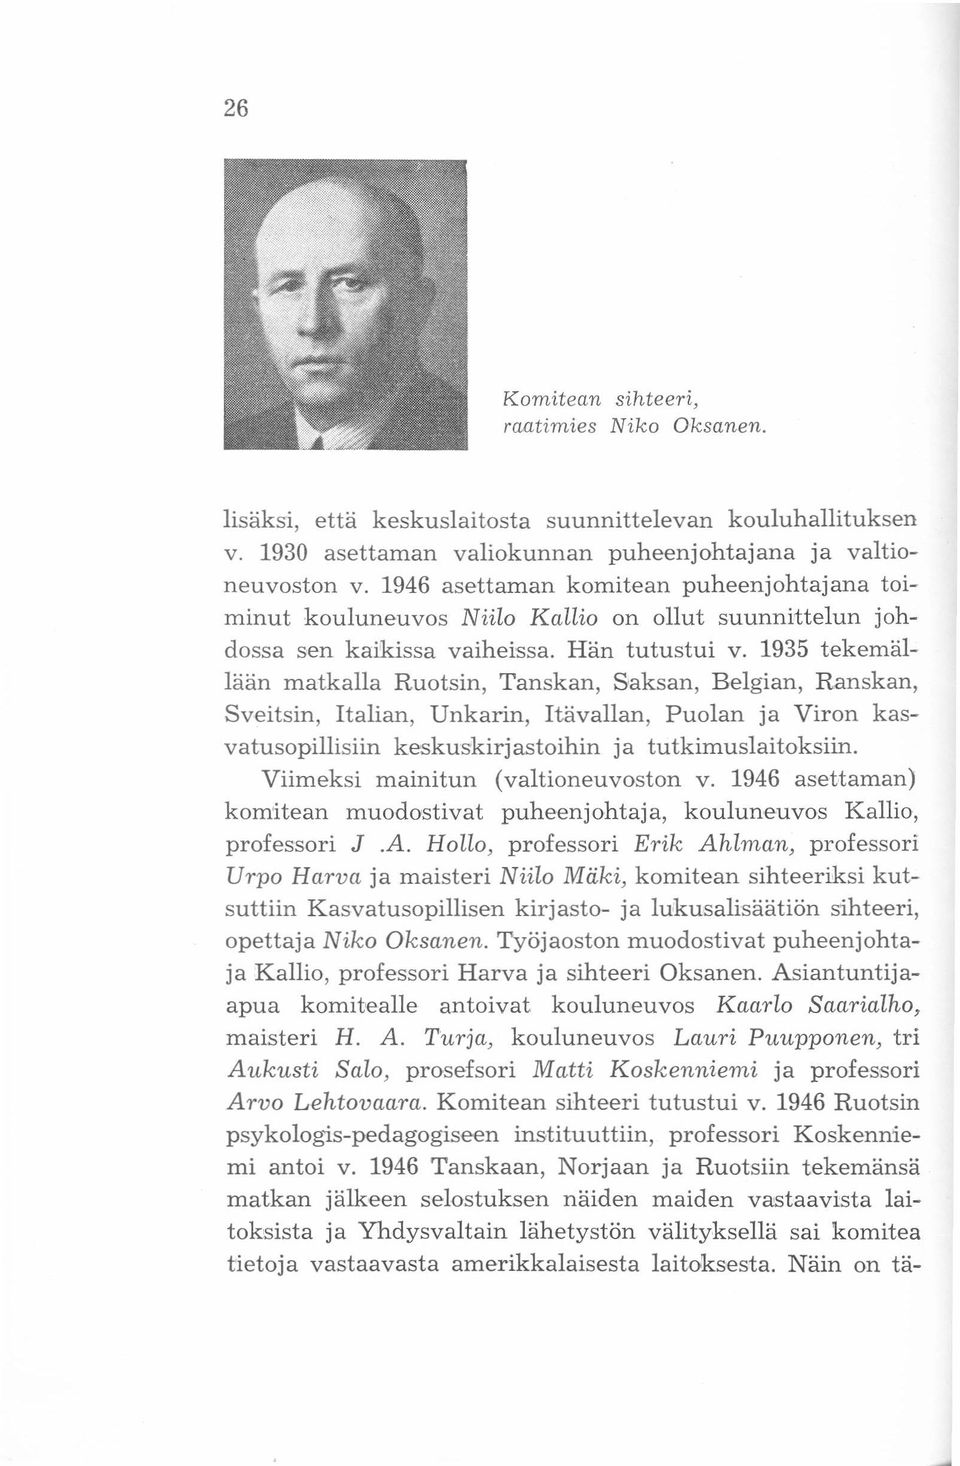 1935 tekernällään matkalla Ruotsin, Tanskan, Saksan, Belgian, Ranskan, Sveitsin, Italian, Unkarin, Itävallan, Puolan ja Viron kasvatusopillisiin keskuskirjastoihin ja tutkimuslaitoksiin.